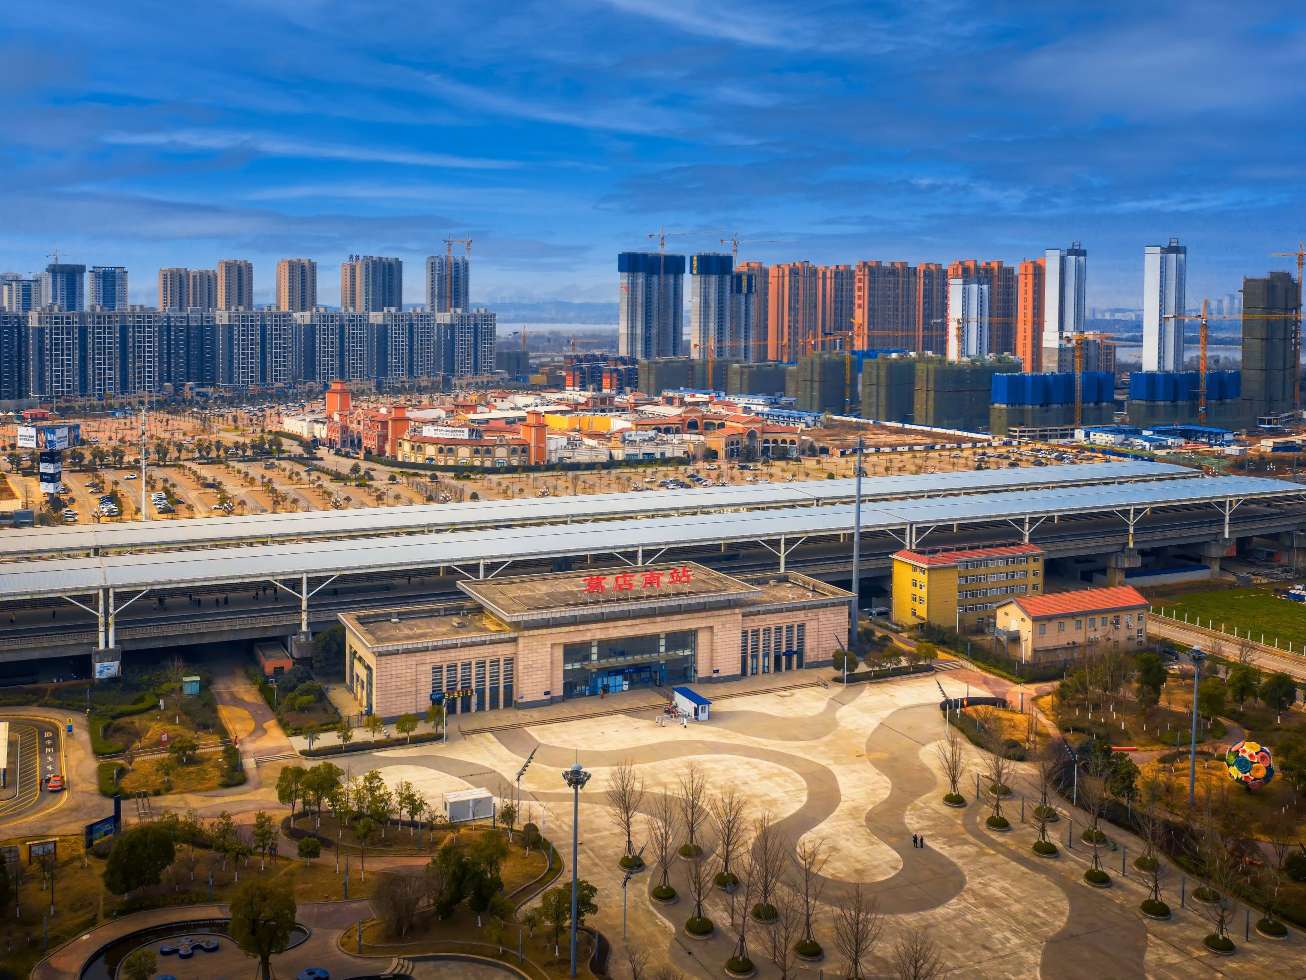 加快推进城市和产业集中高质量发展 葛店今年将投超200亿元建设武汉新城